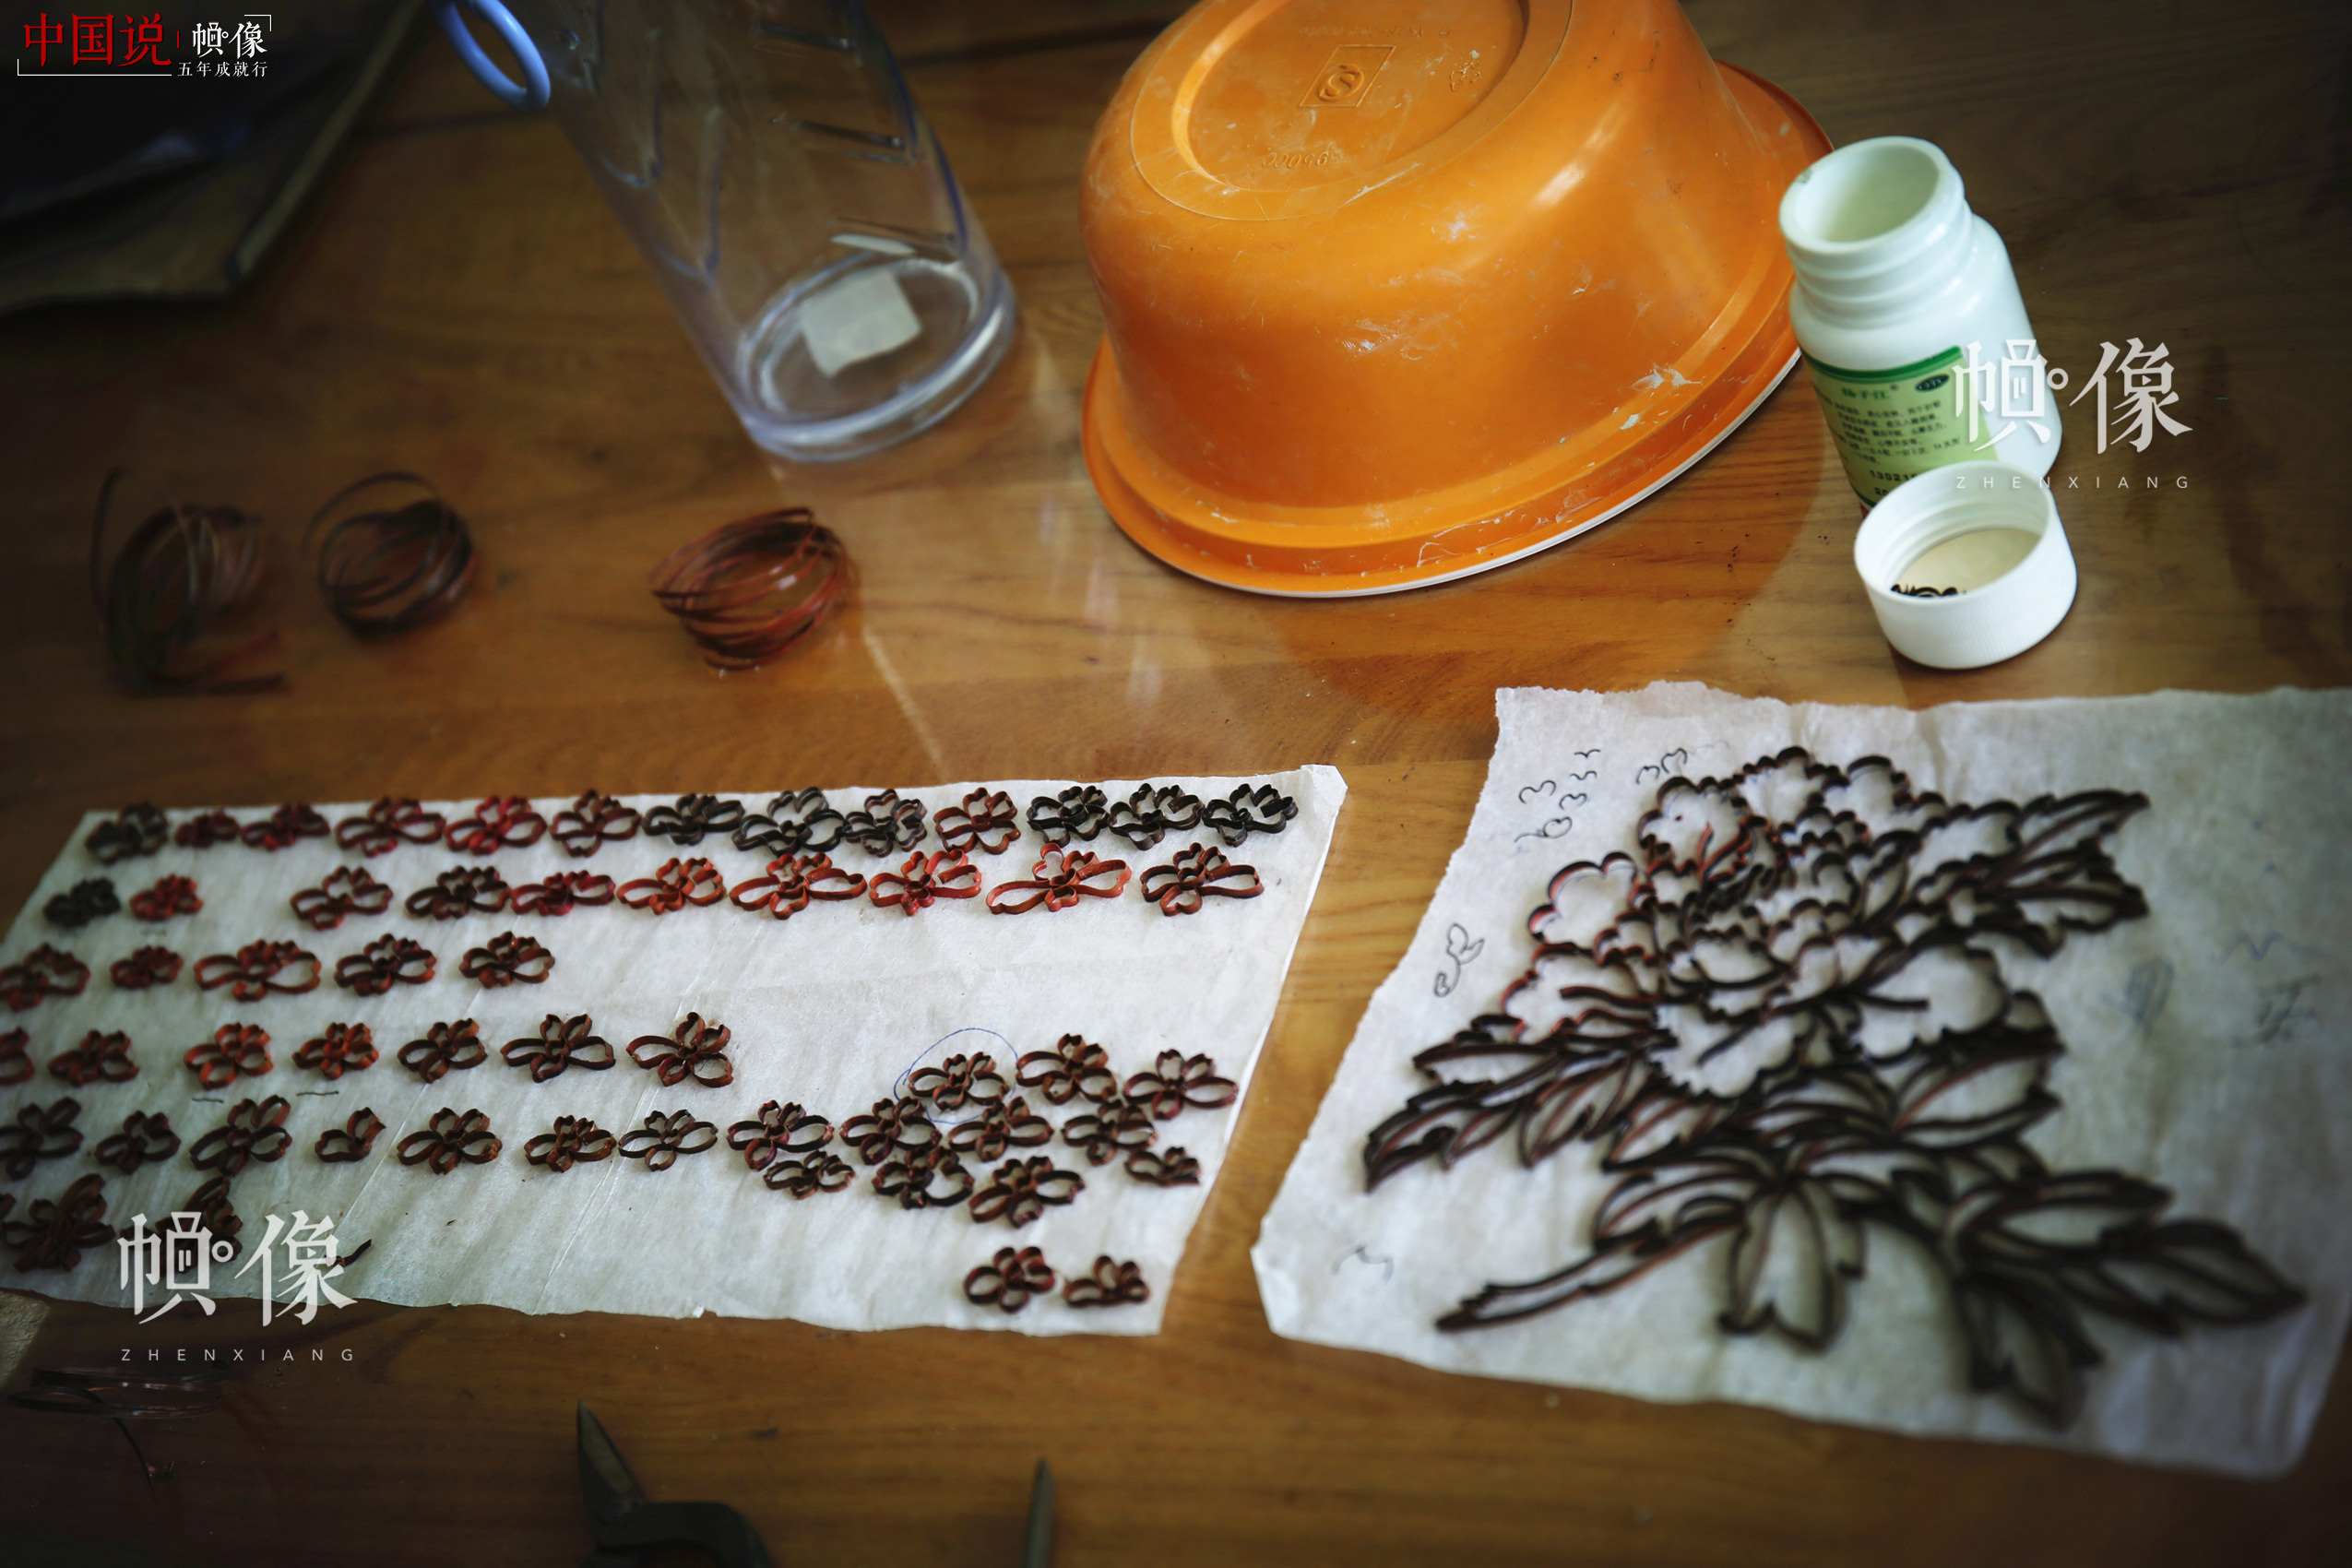 图为景泰蓝掐丝工序制作完成的铜丝。中国网记者 赵超 摄